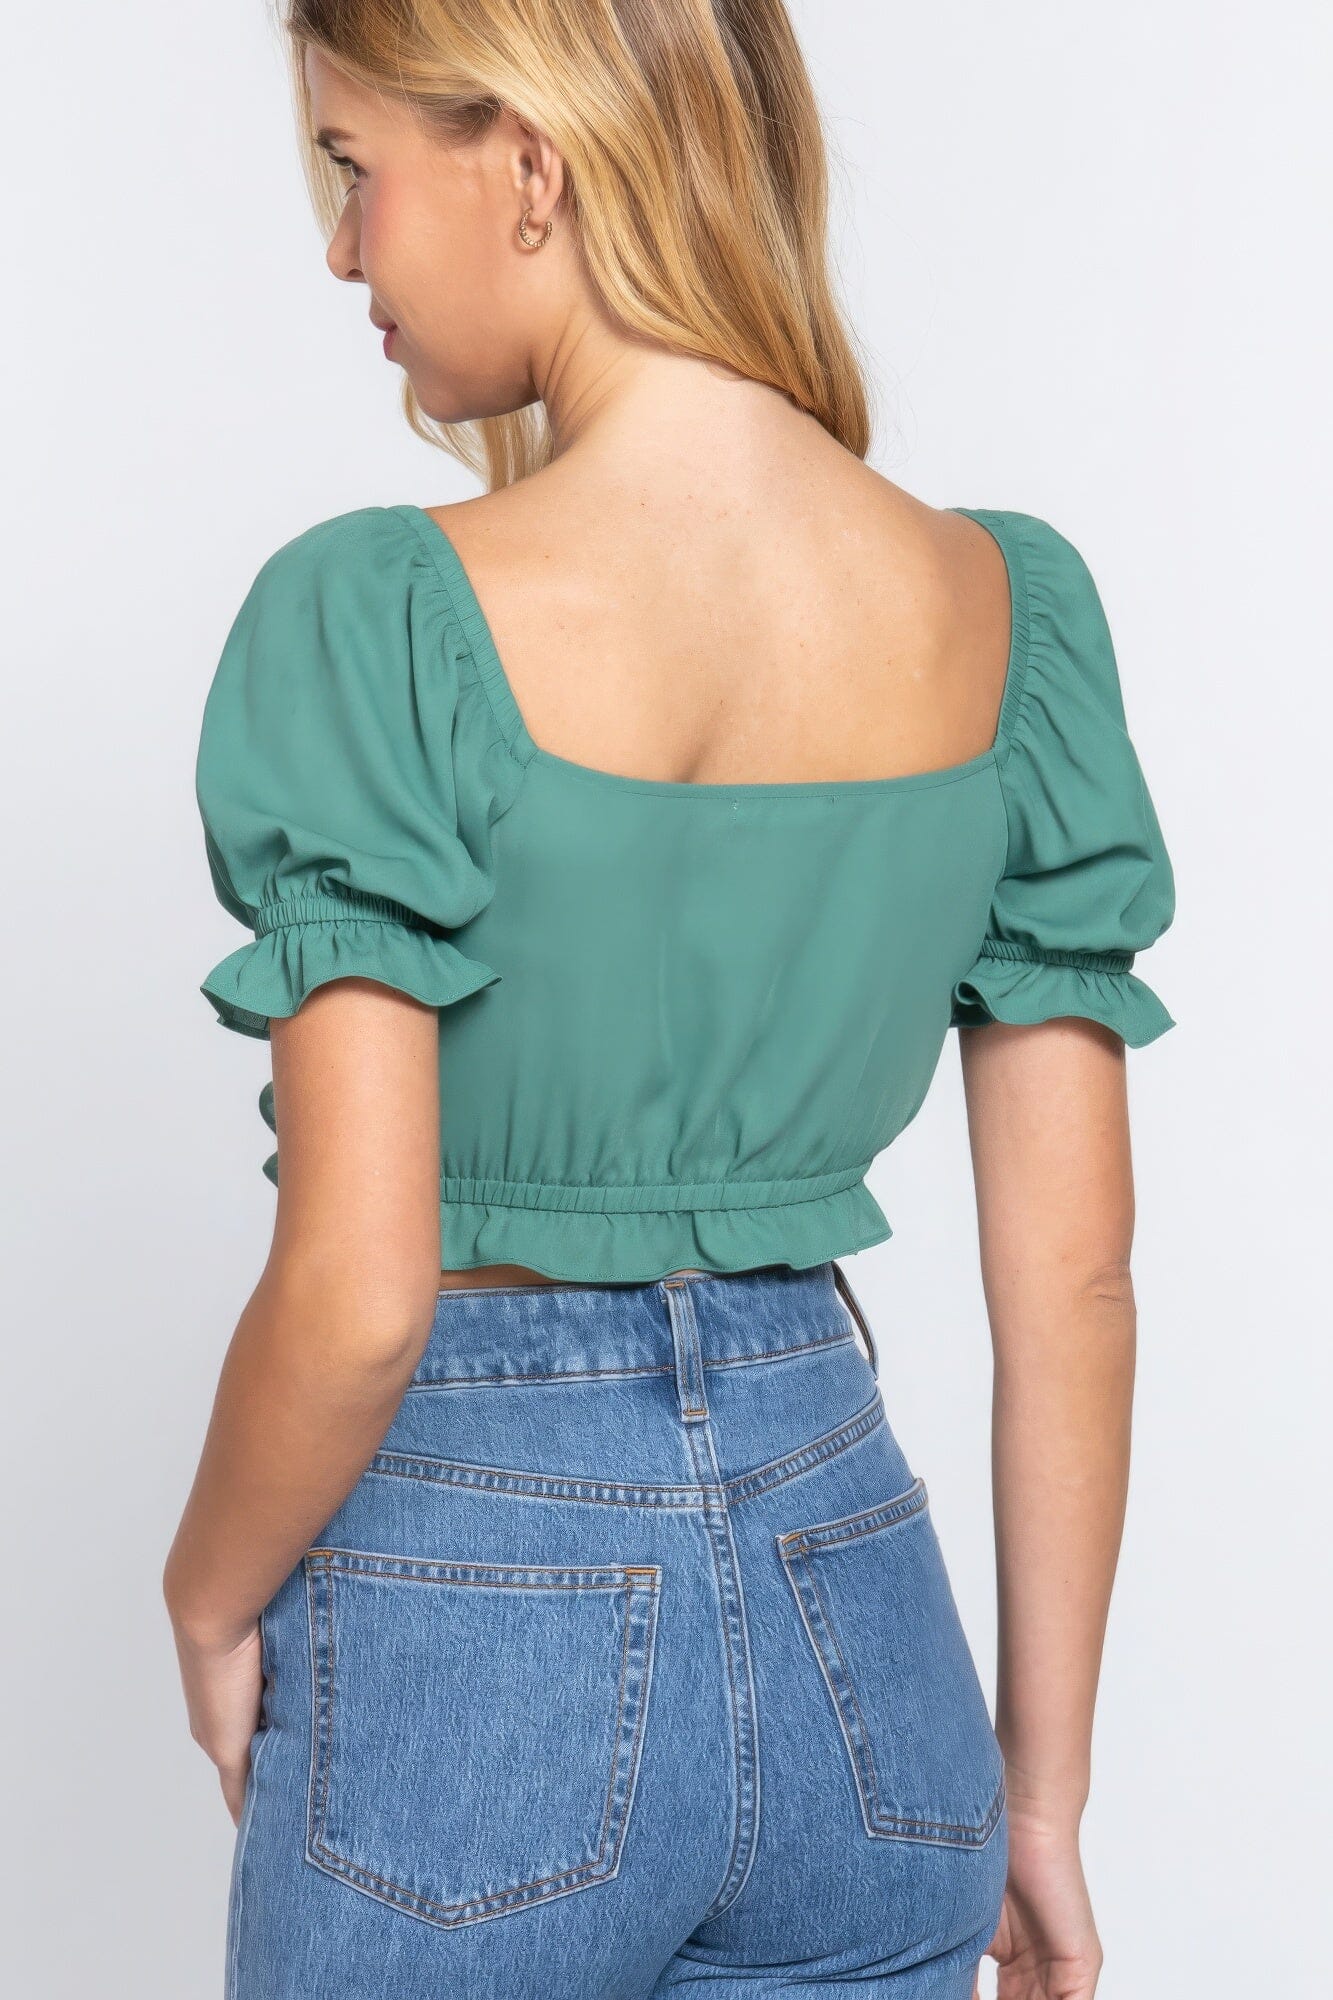 Jade Green Short Sleeve Print Crop Woven Top Shirts & Tops jehouze 